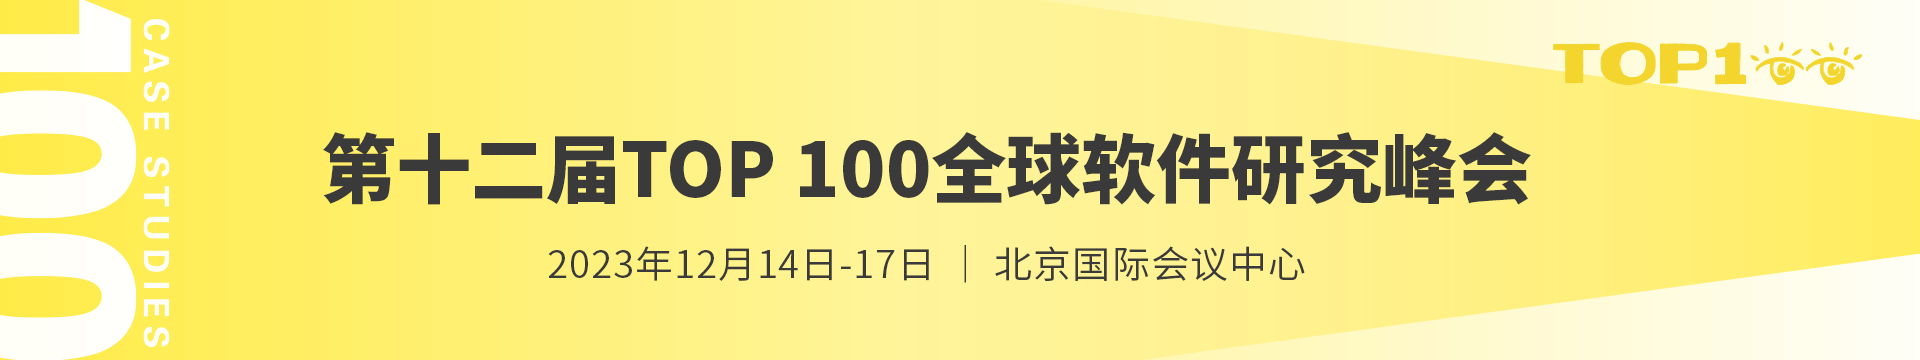 第十二屆TOP100全球軟件案例研究峰會